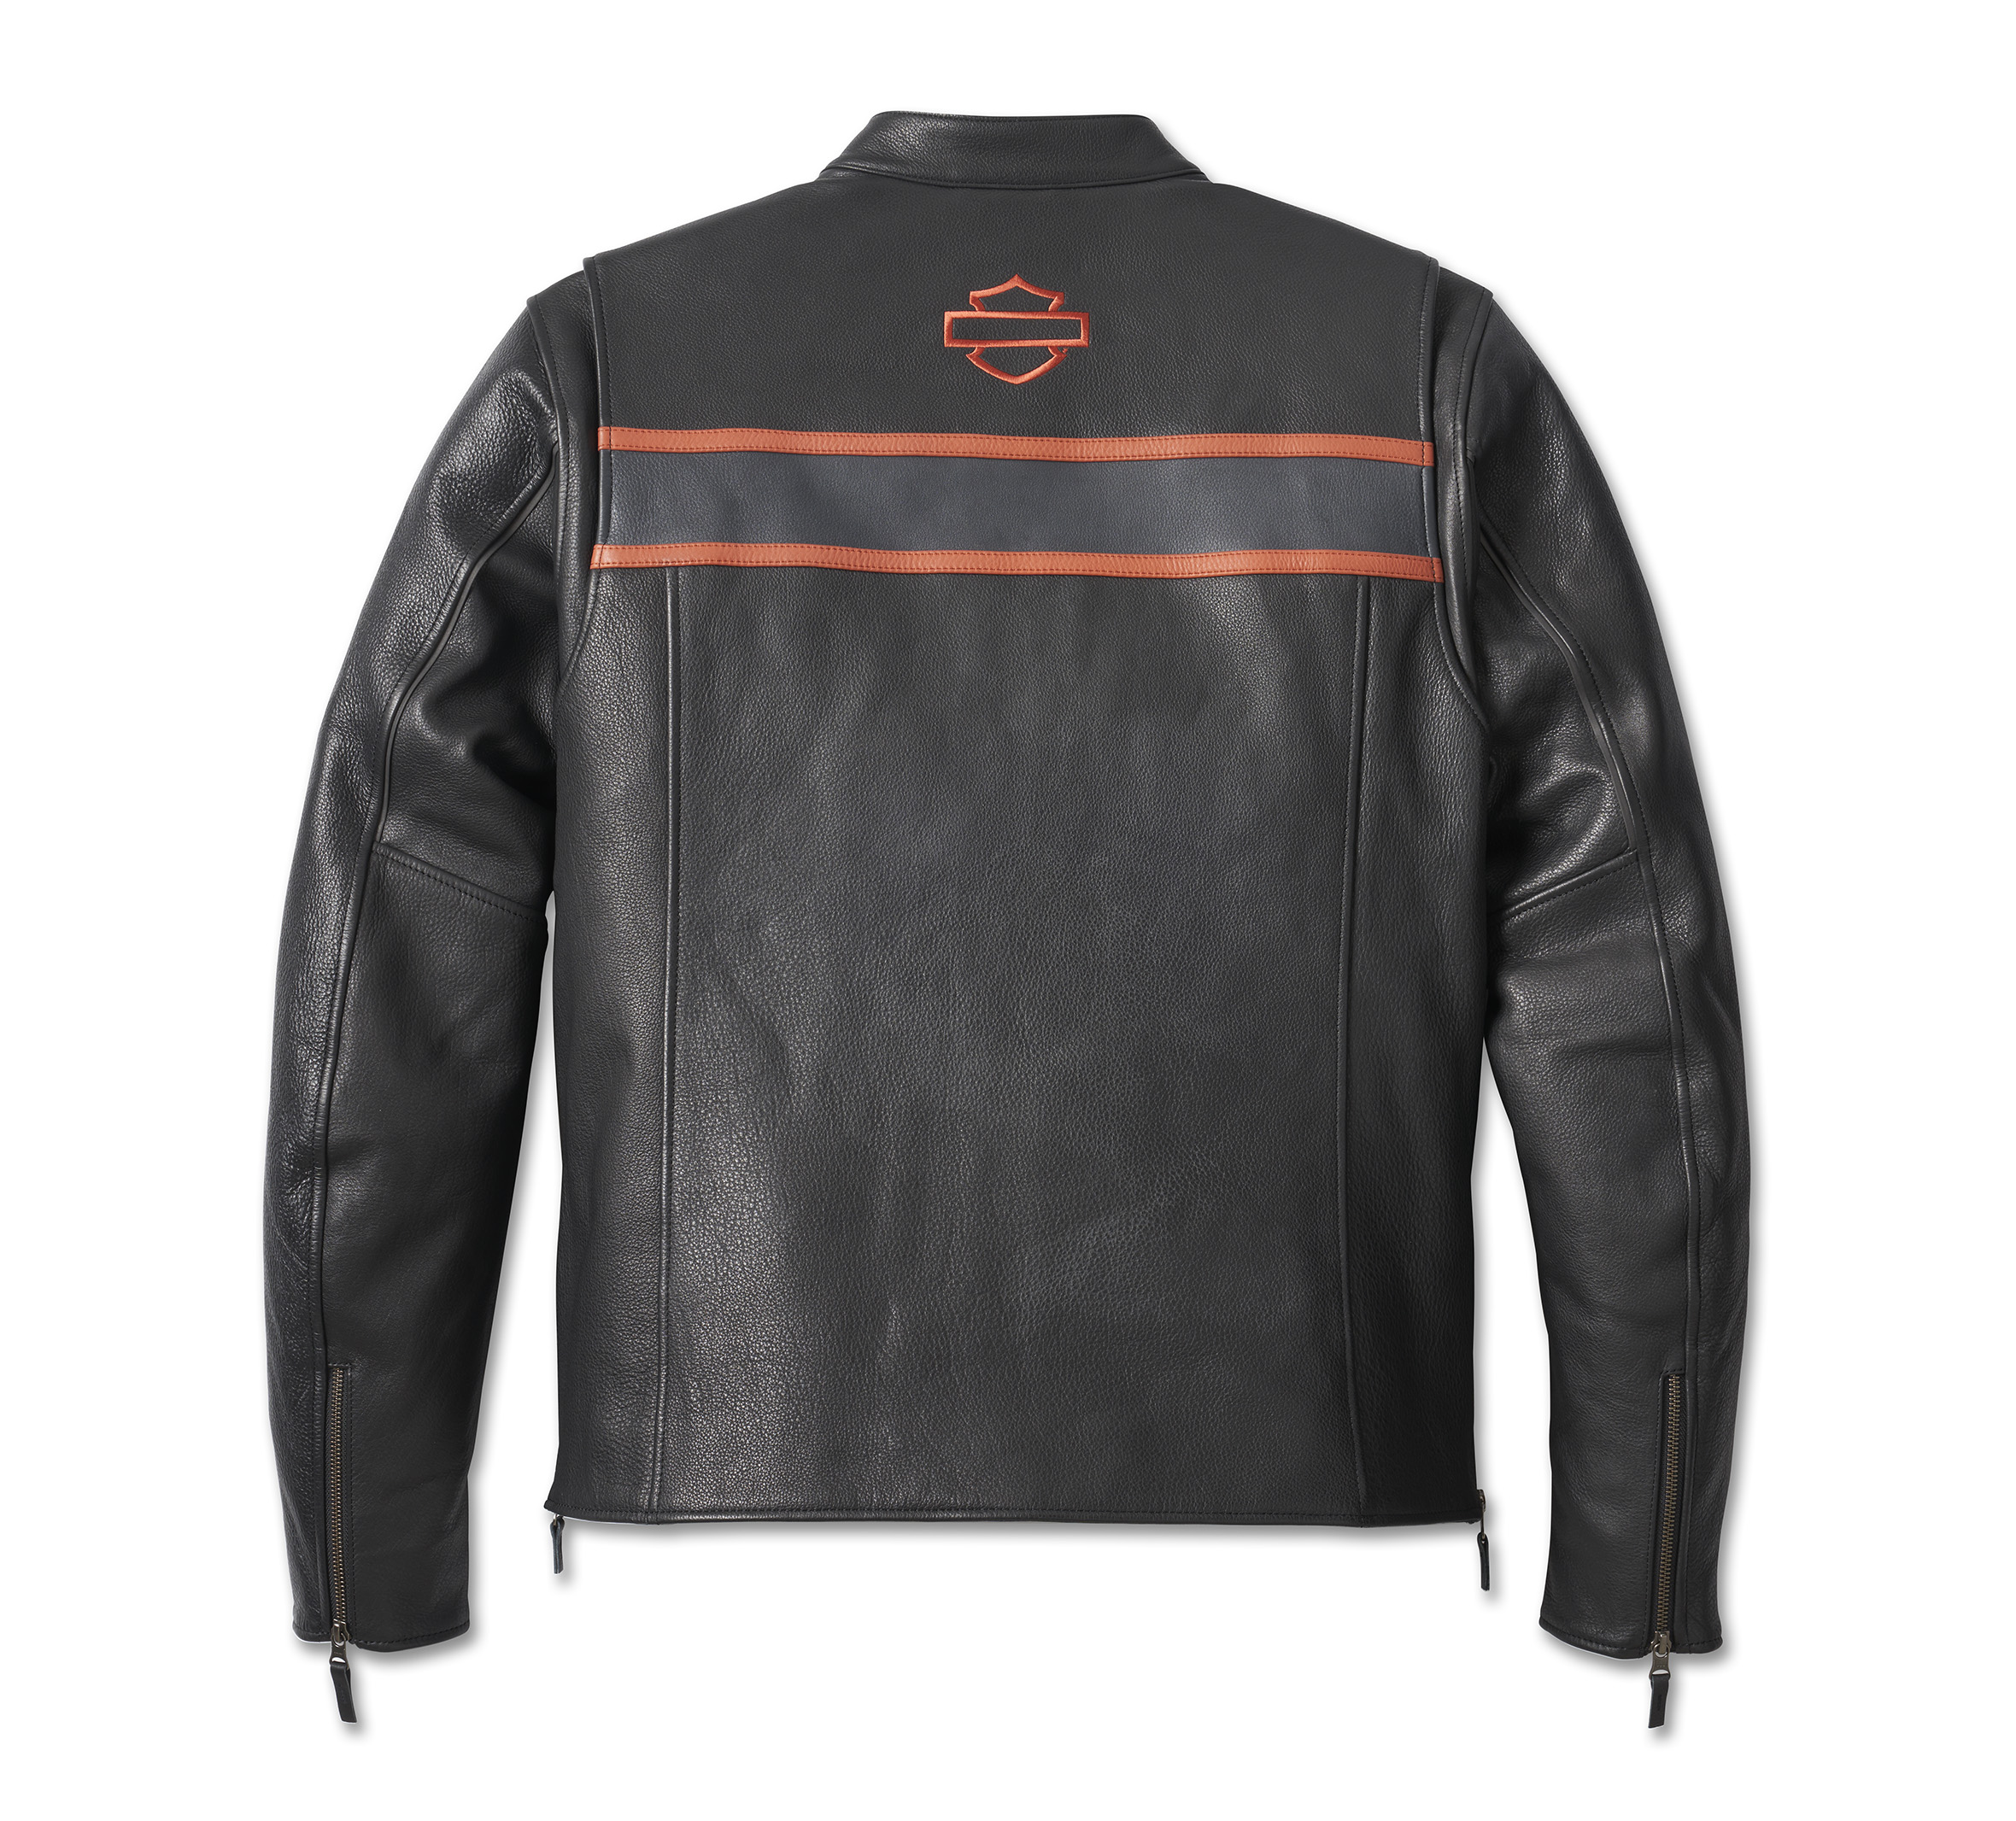 Harley Davidson Roadway Brown Leather Jacket - Maker of Jacket